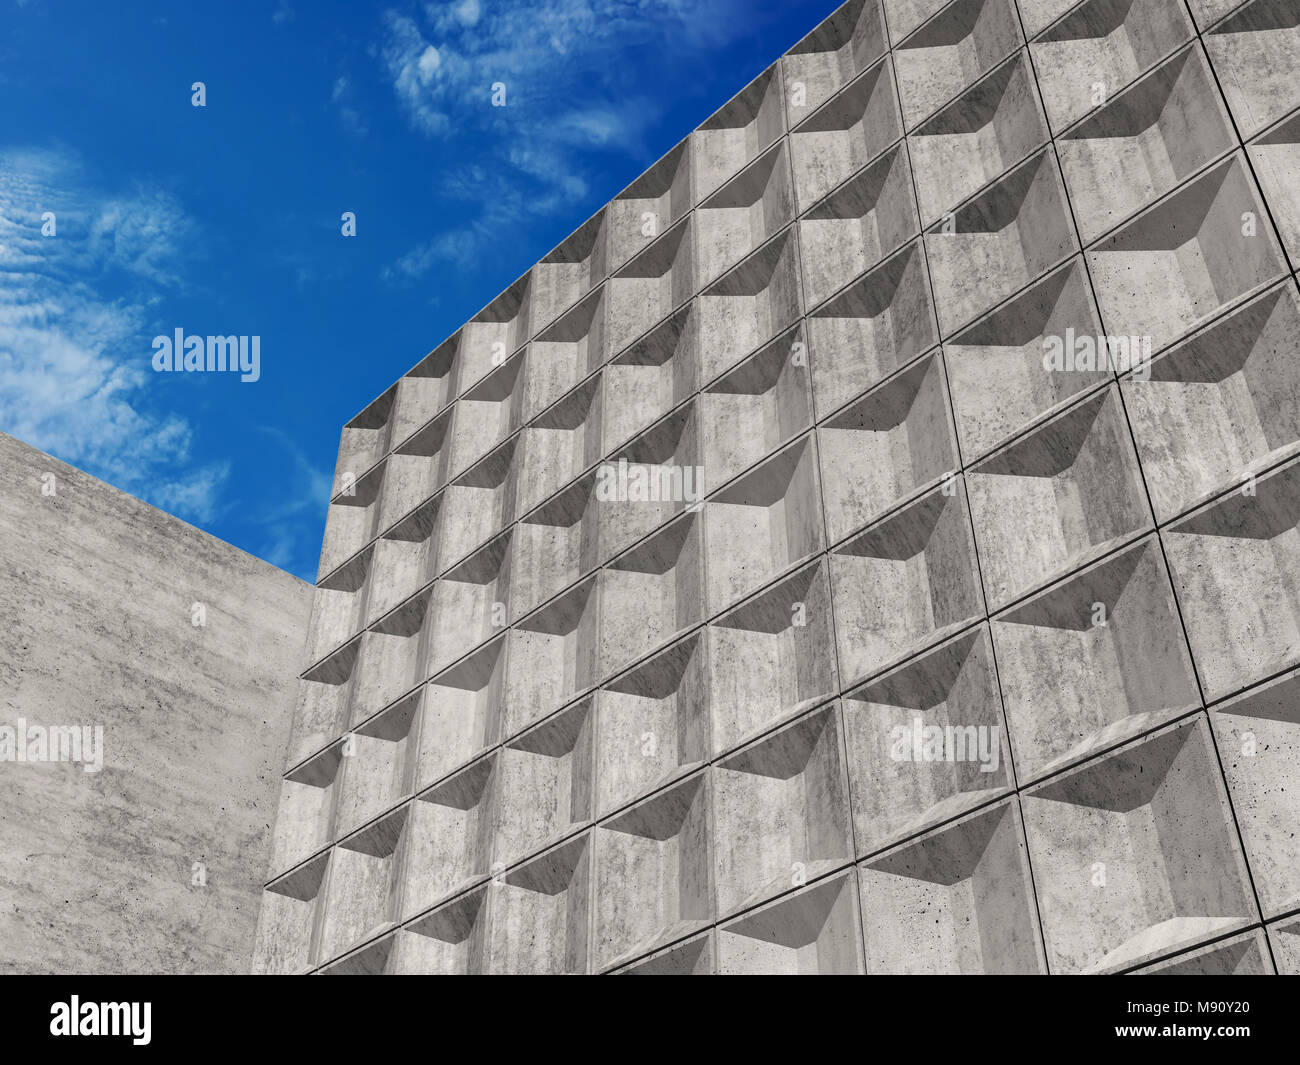 Betonwände mit dekorativen relief Kacheln Muster unter blauem Himmel. Abstrakte Minimalismus Architektur Hintergrund, 3D-Rendering illustration Stockfoto